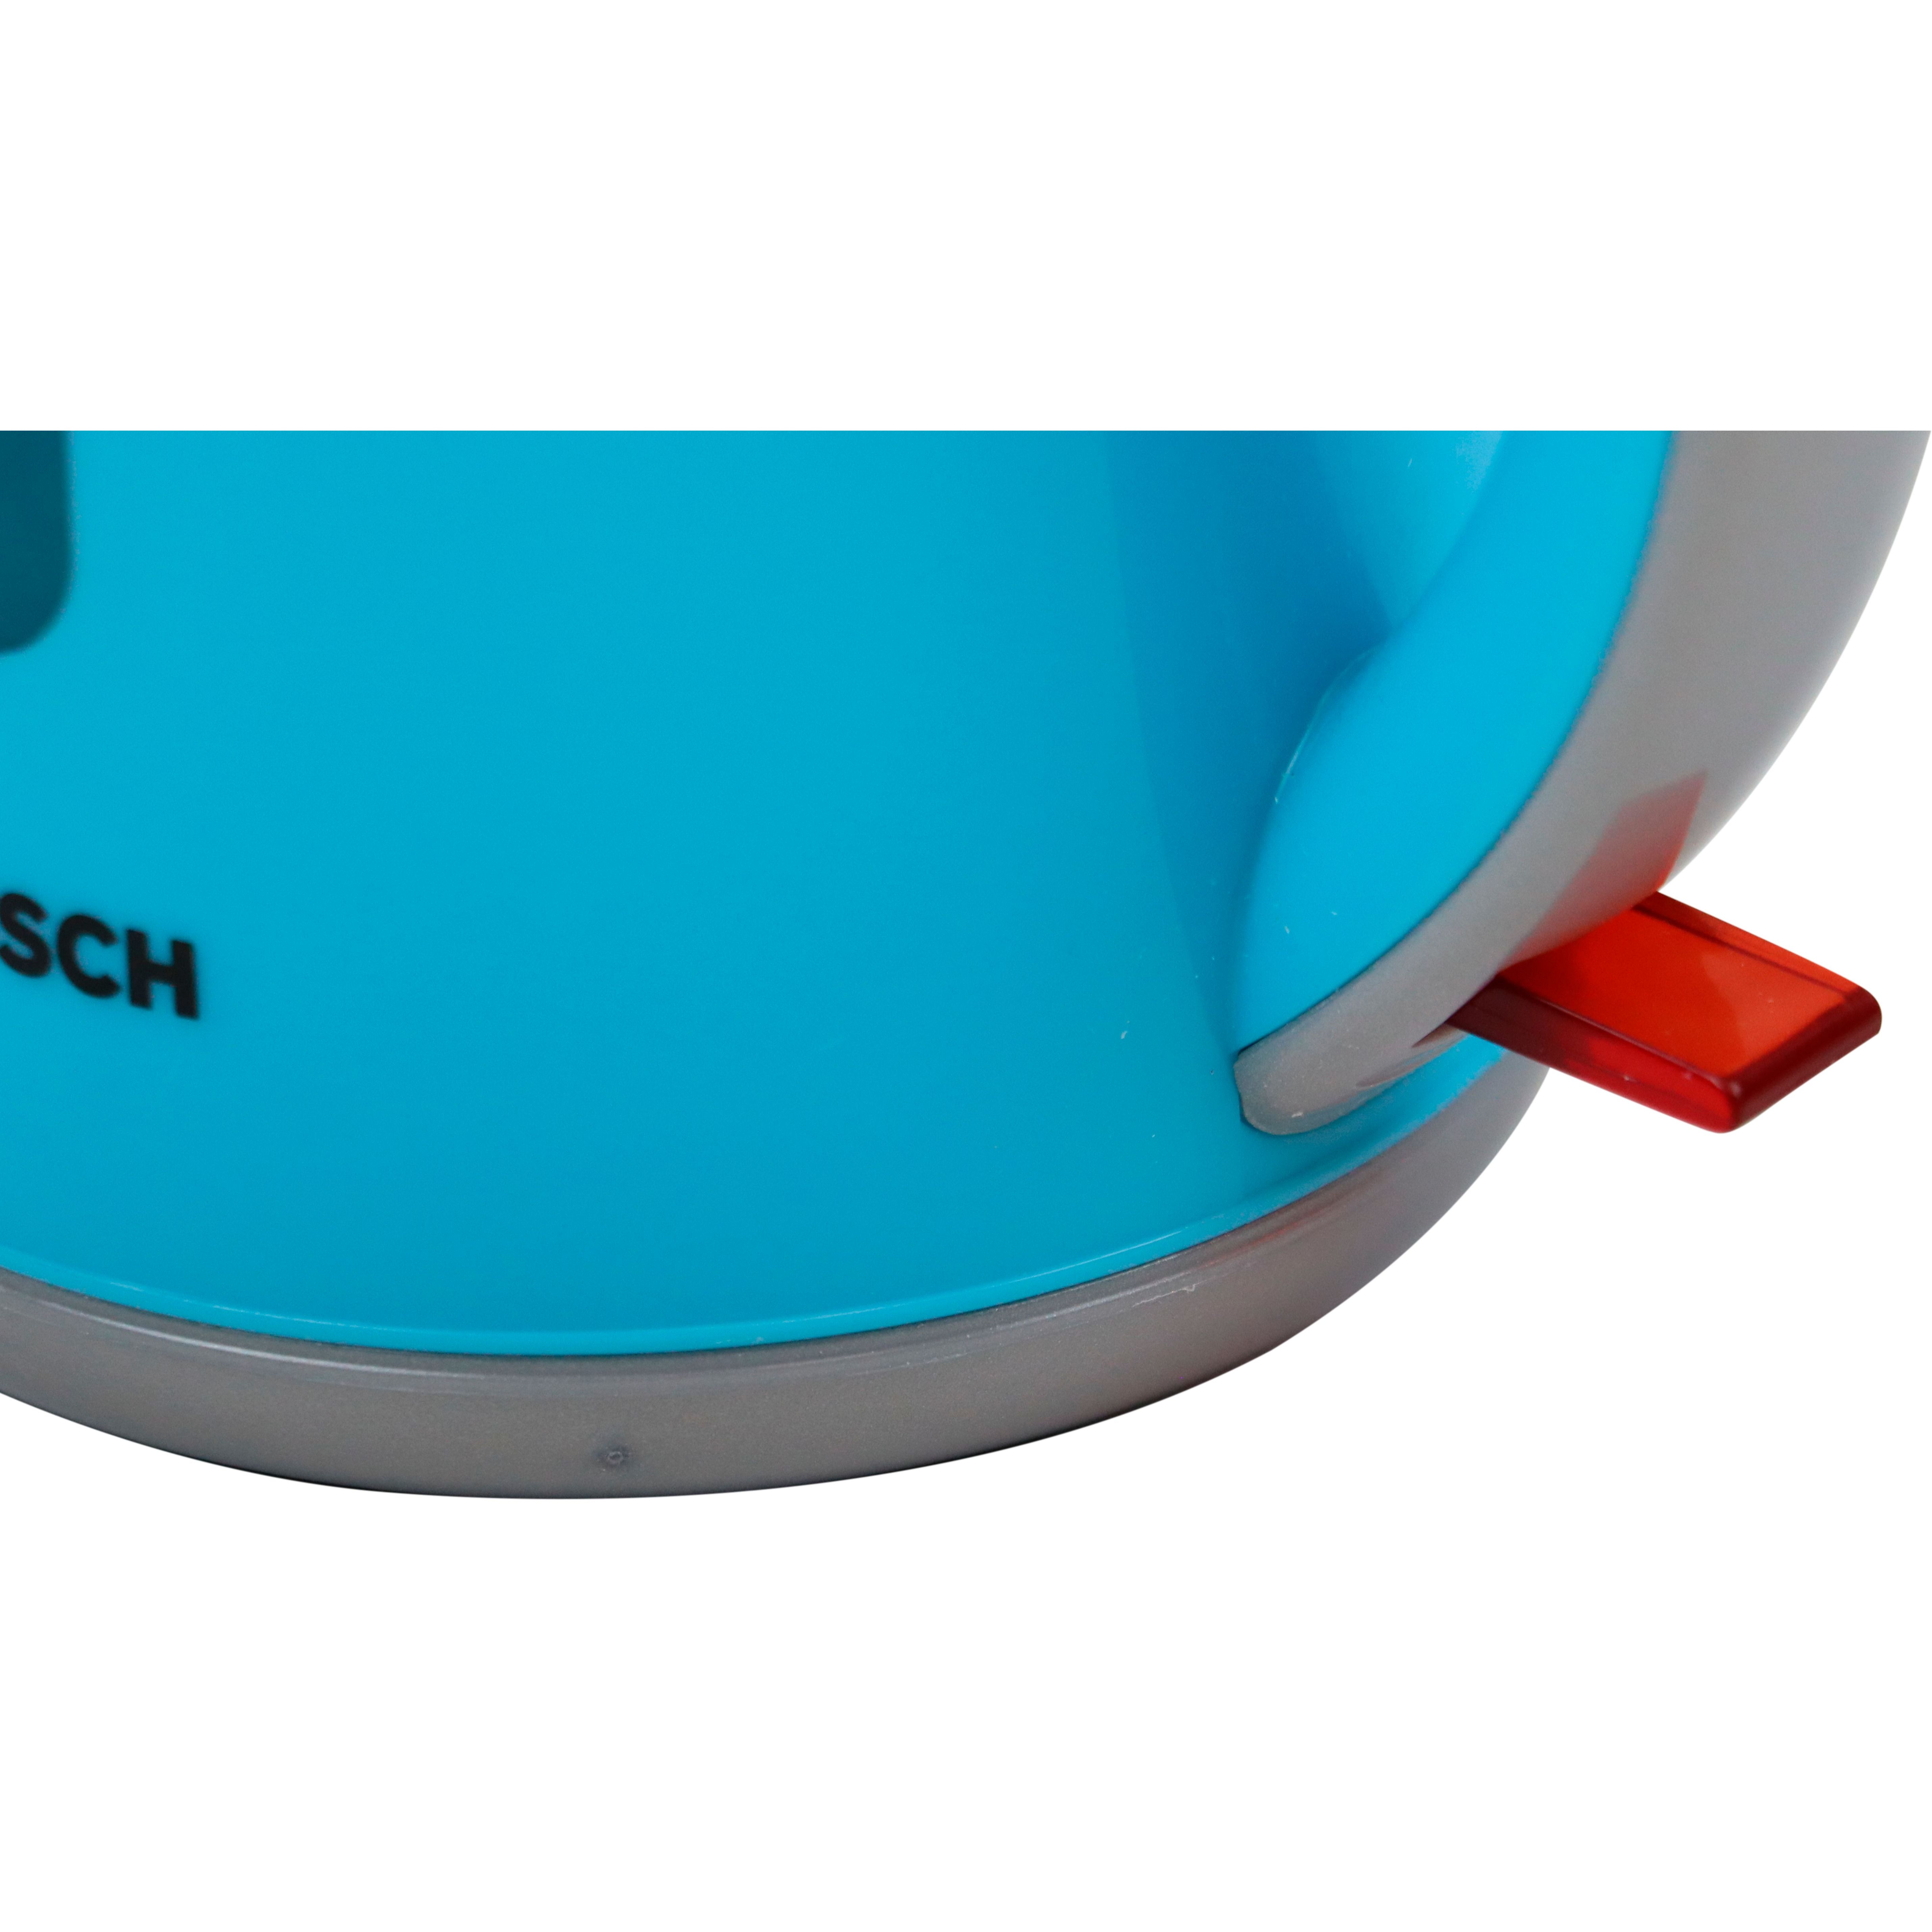 Іграшковий набір Bosch Mini чайник бірюзовий (9539) - фото 5